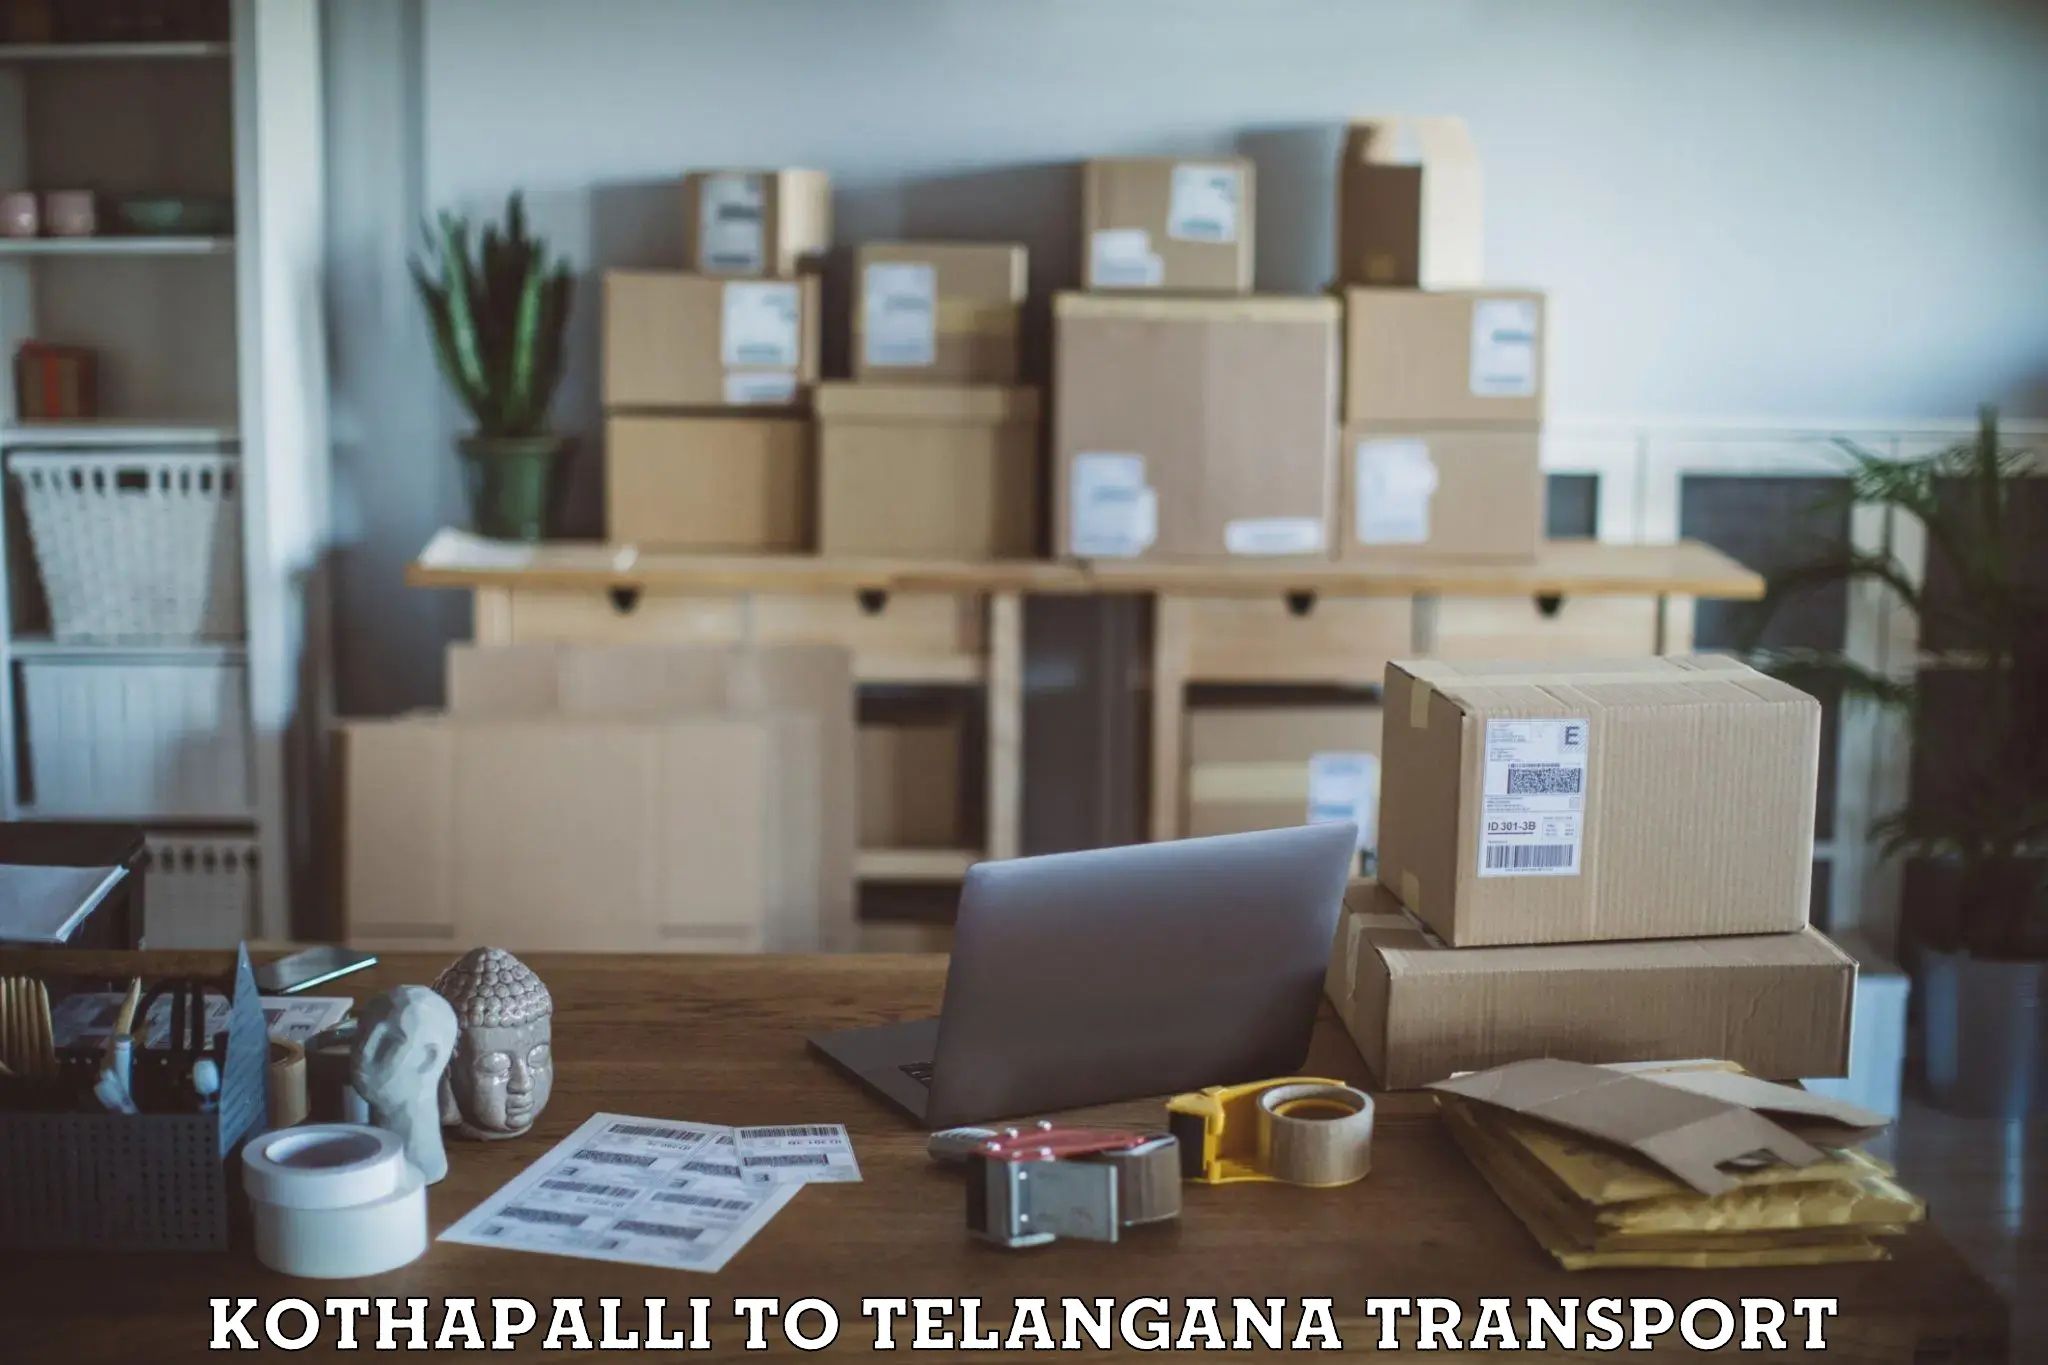 Road transport online services Kothapalli to Kallur